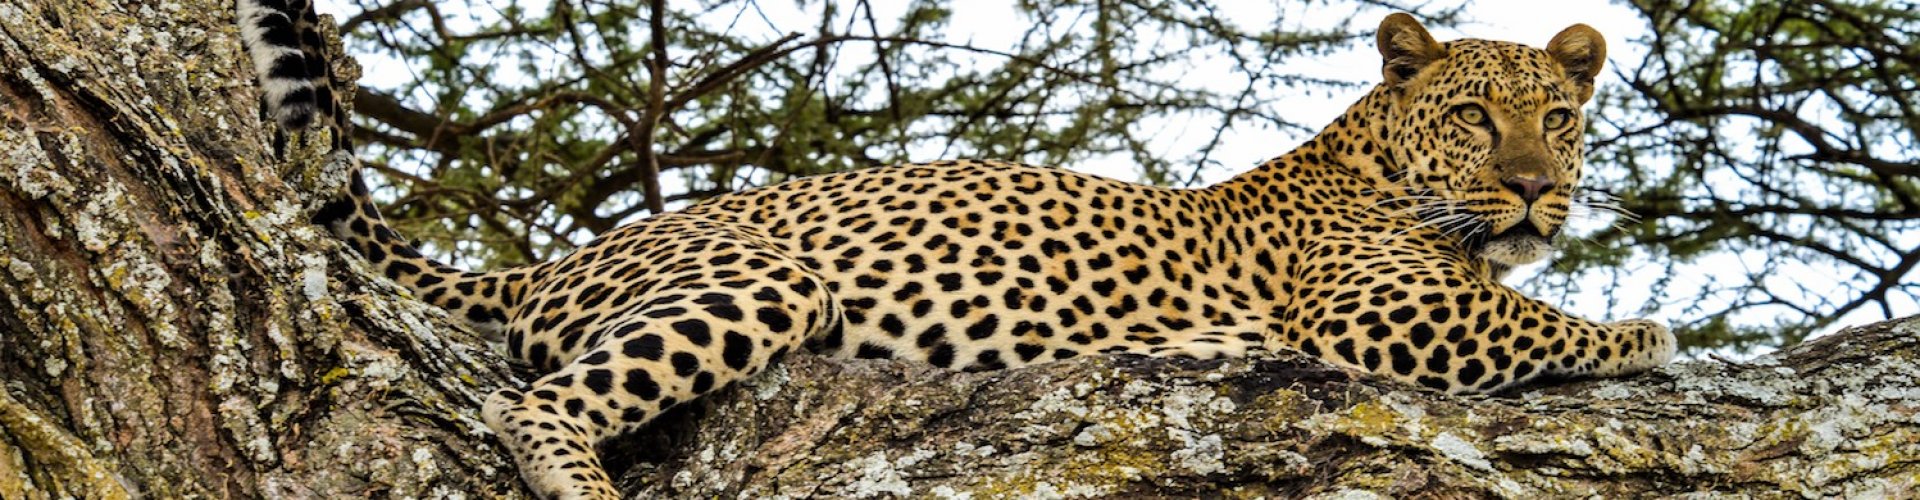 Tanzania Africa Leopard